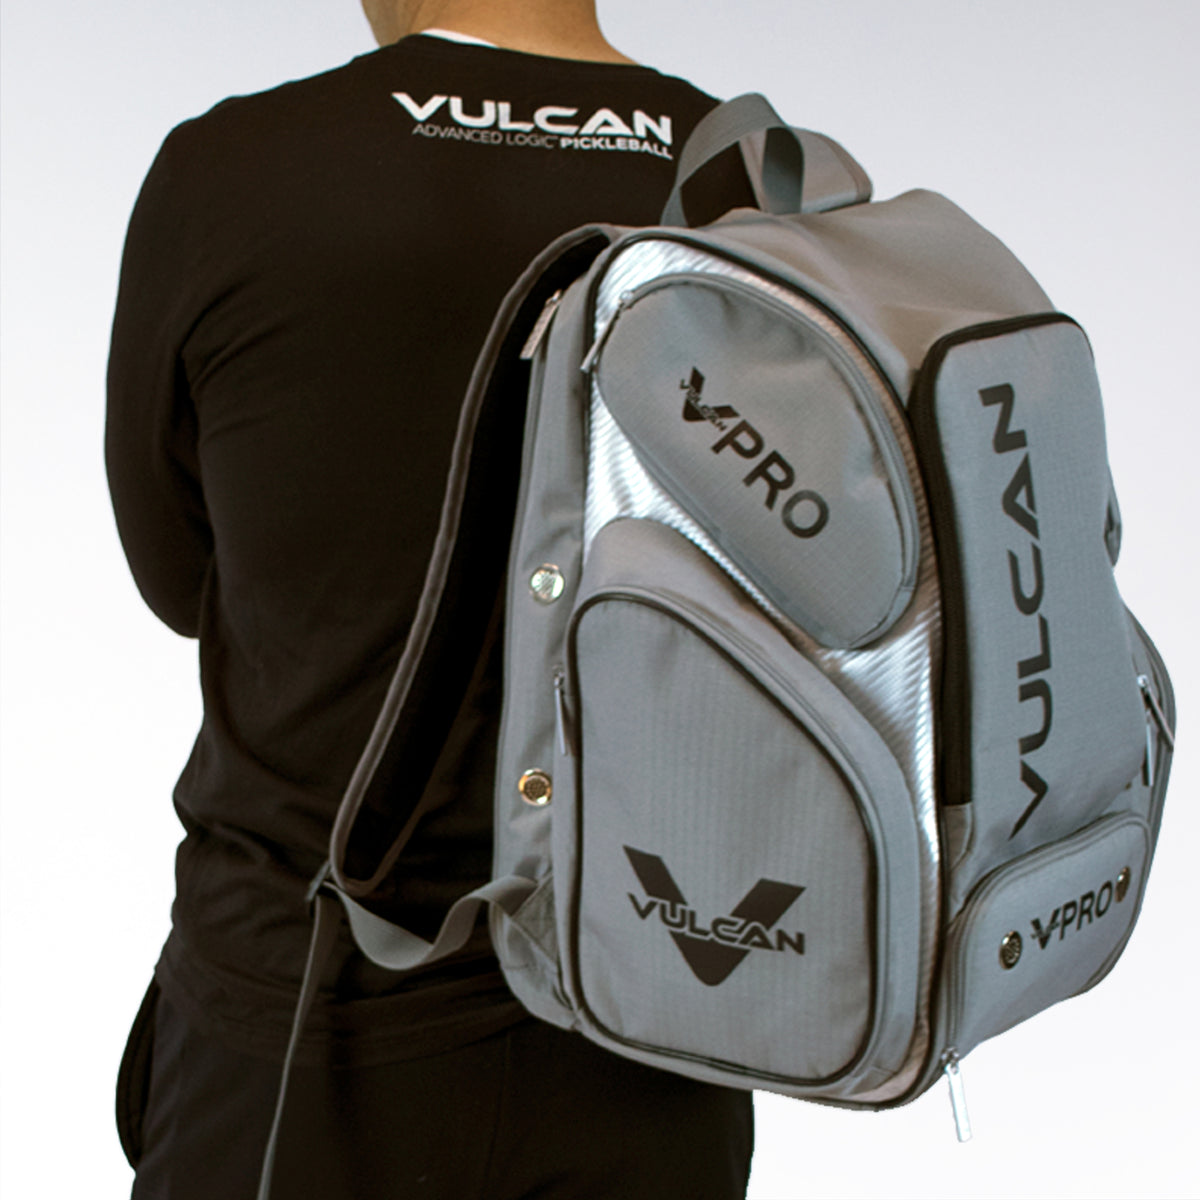 Vulcan Pickleball VPRO Backpack